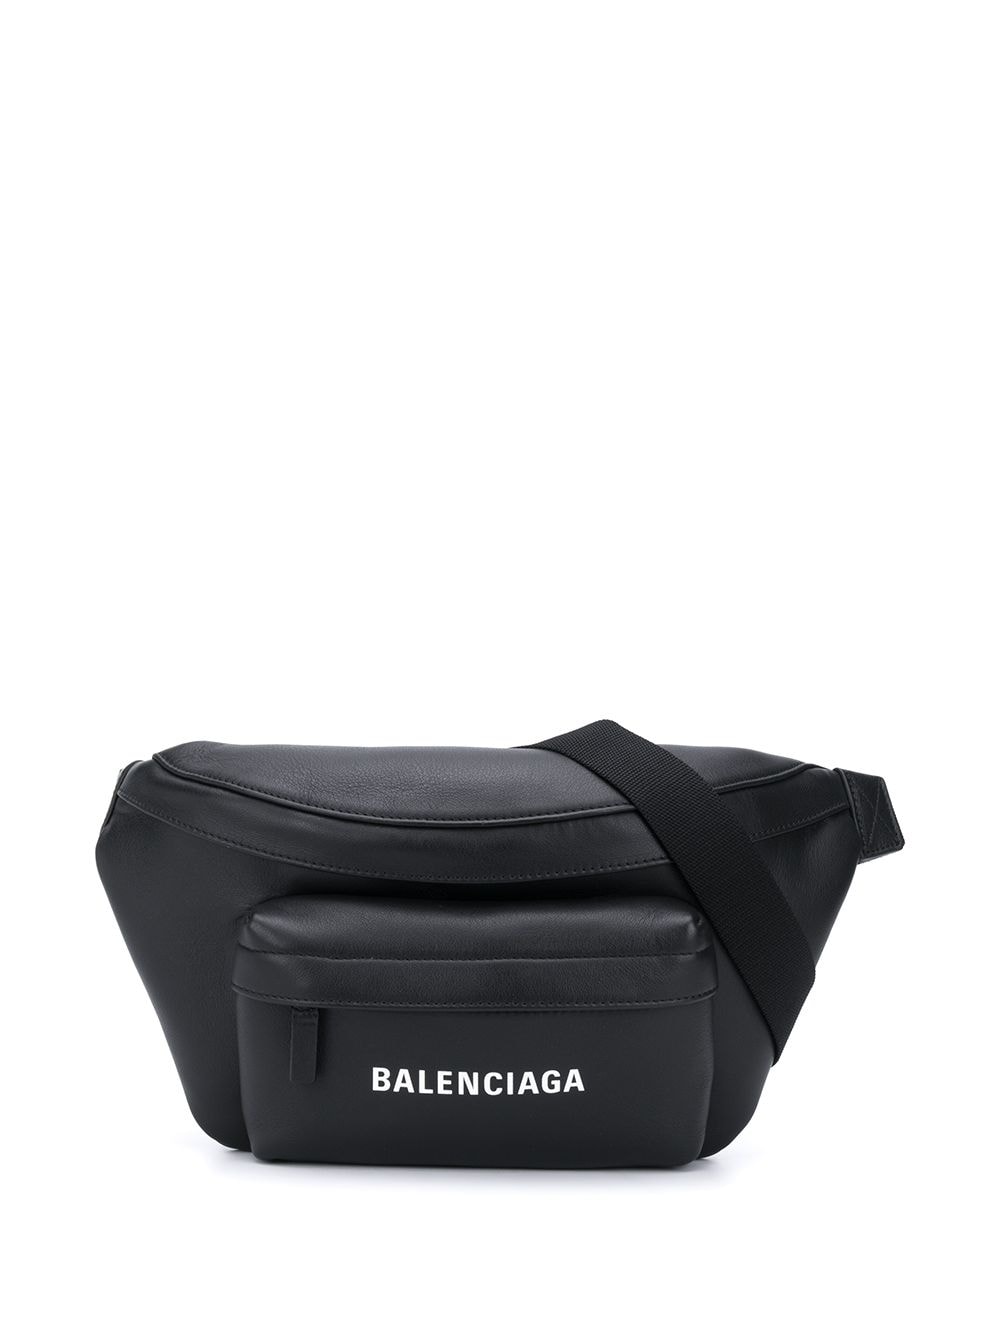 фото Balenciaga поясная сумка everyday